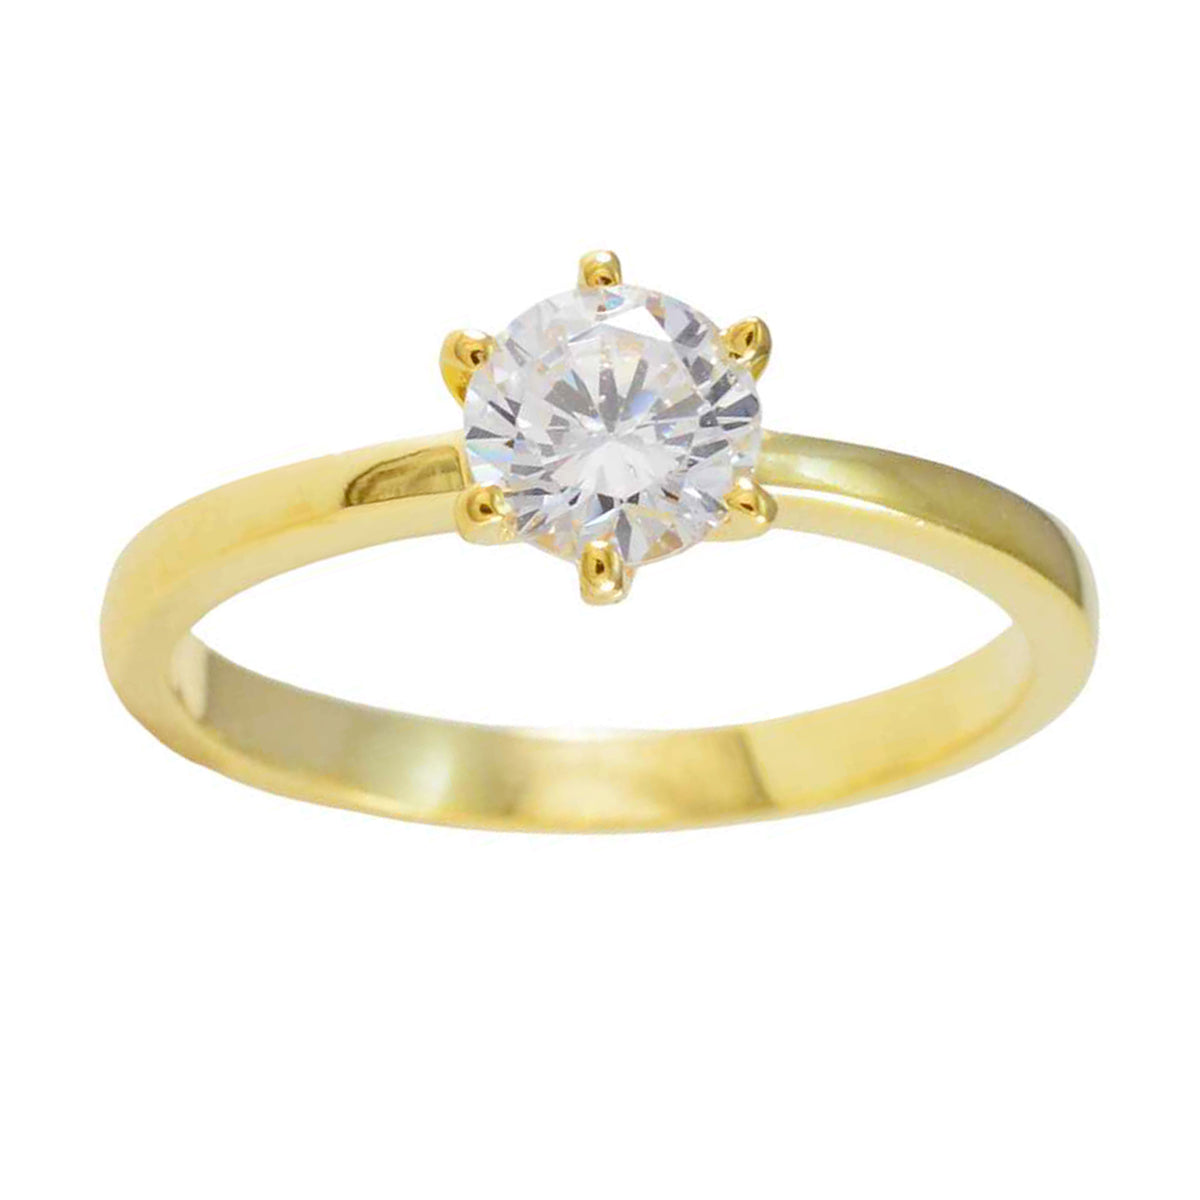 Великолепное серебряное кольцо riyo с покрытием из желтого золота, кольцо с зубцом круглой формы из белого камня cz